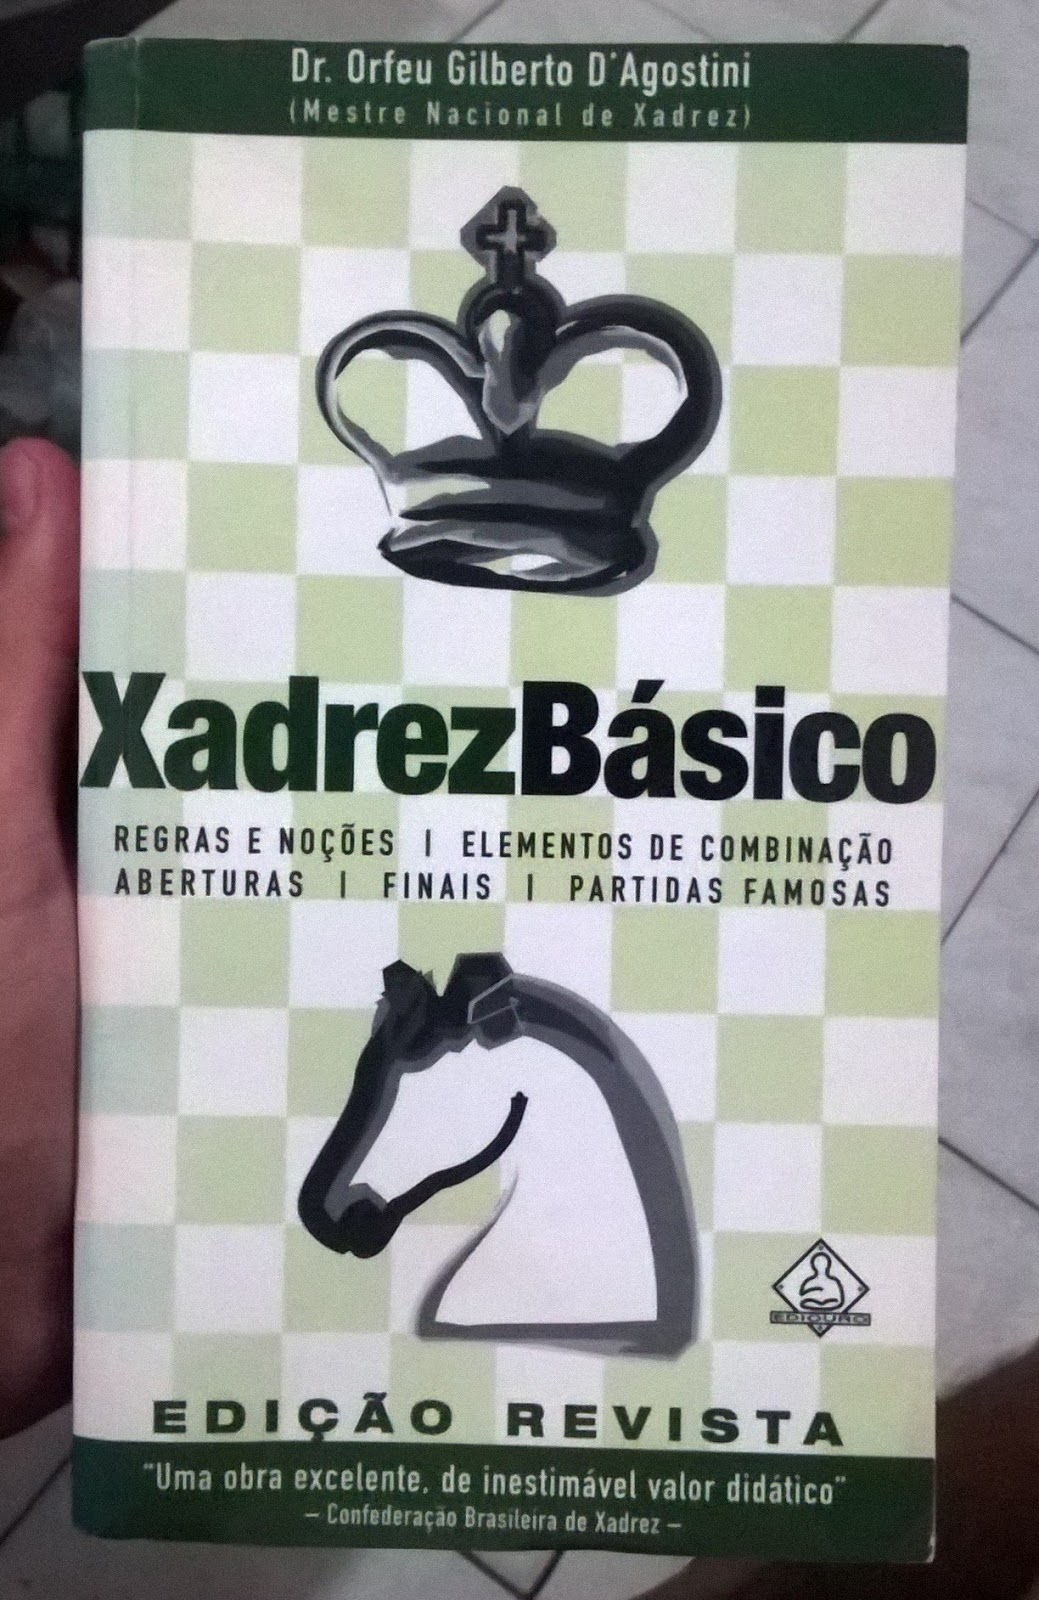 Xadrez Basico, PDF, Aberturas (xadrez)